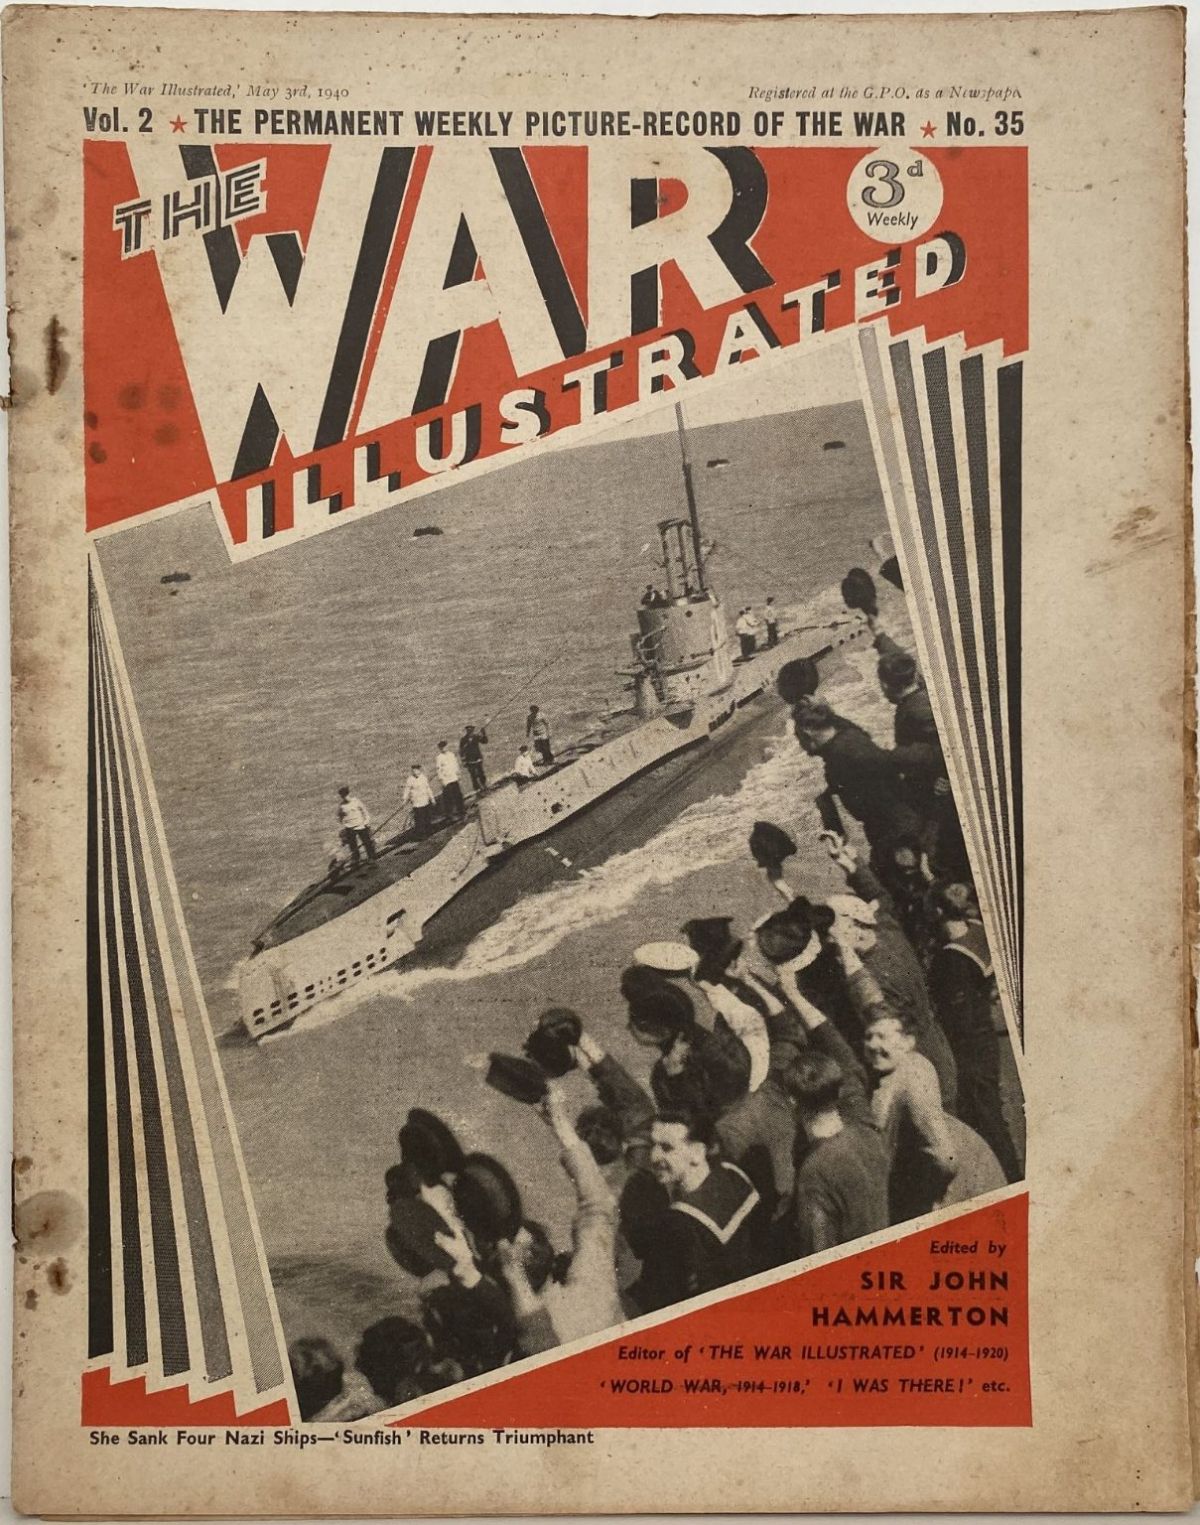 THE WAR ILLUSTRATED - Vol 2, No 35, 3rd May 1940